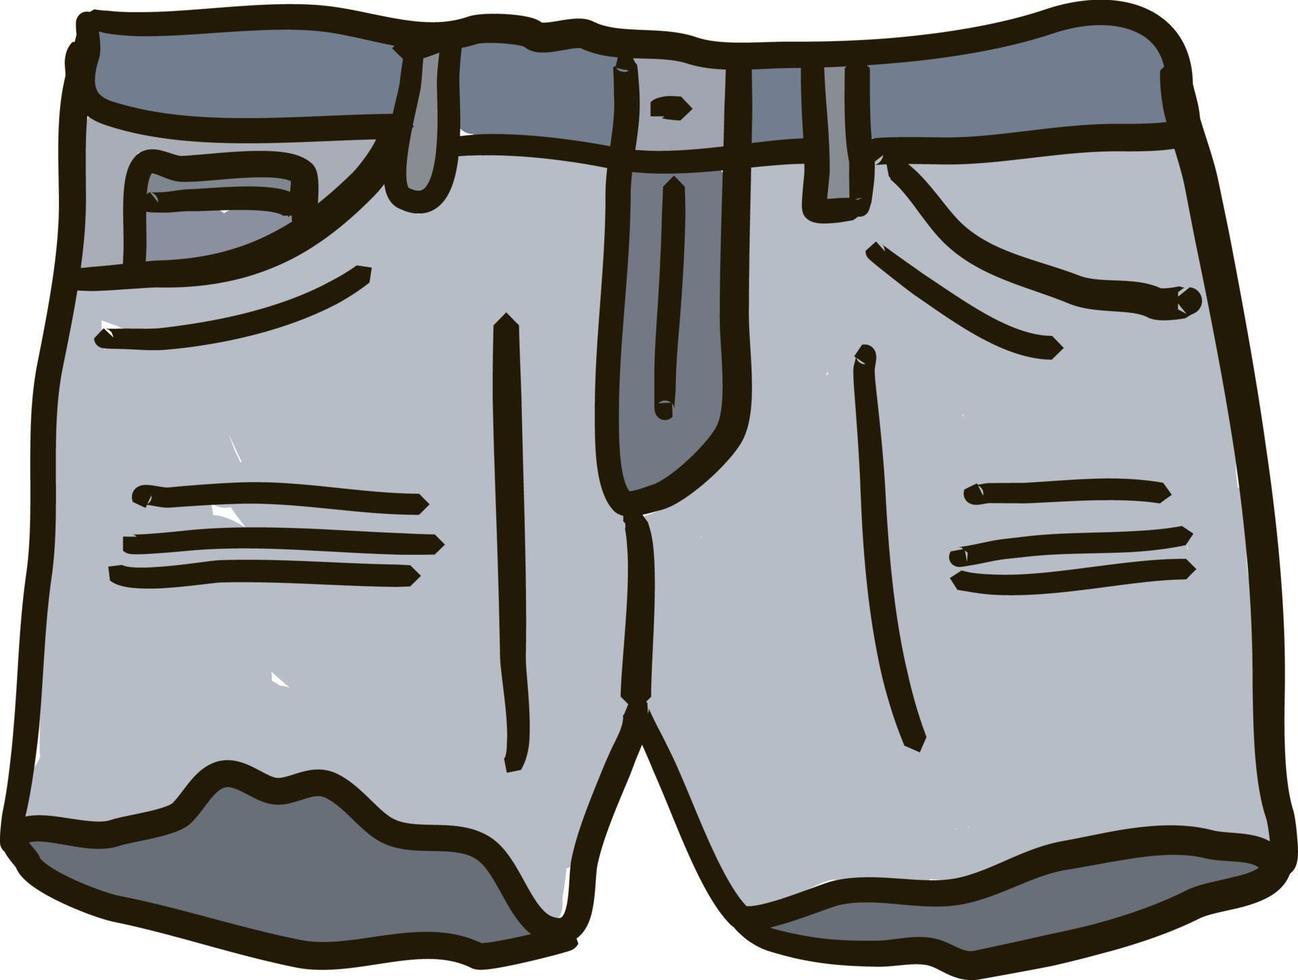 pantalones vaqueros de Texas, ilustración, vector sobre fondo blanco.